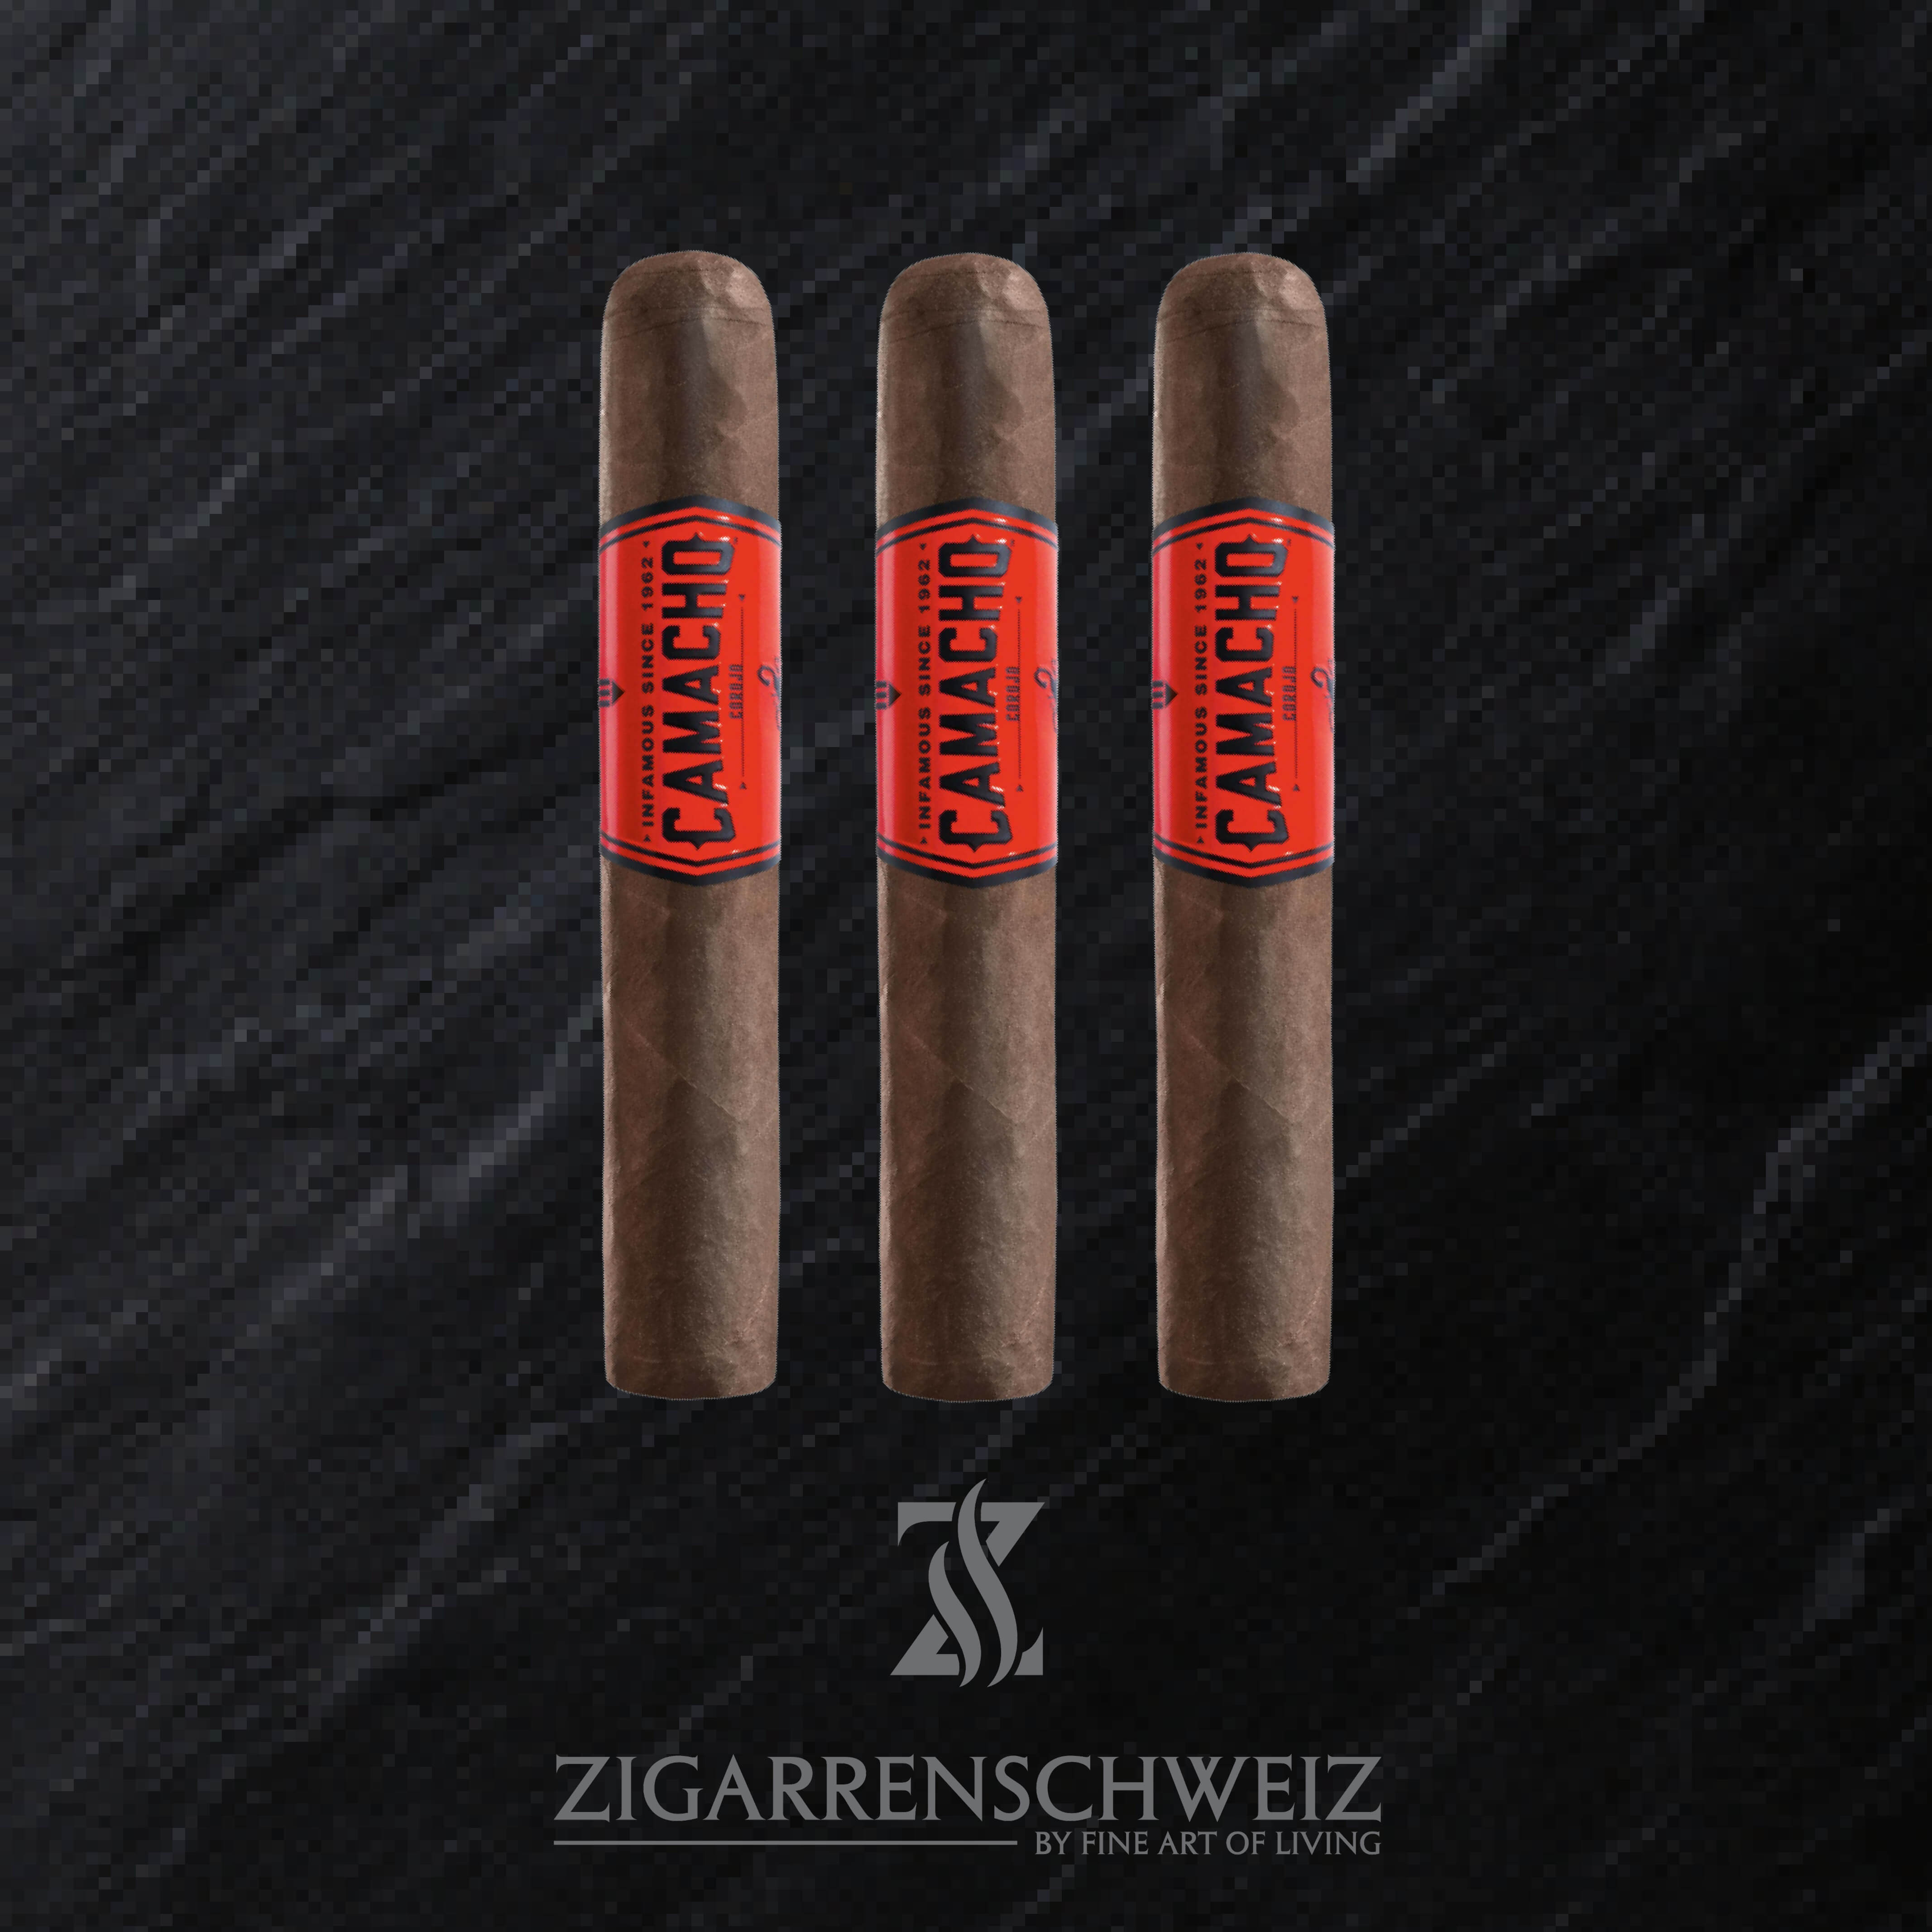 Camacho Corojo Gordo Zigarren Schweiz 3er Etui